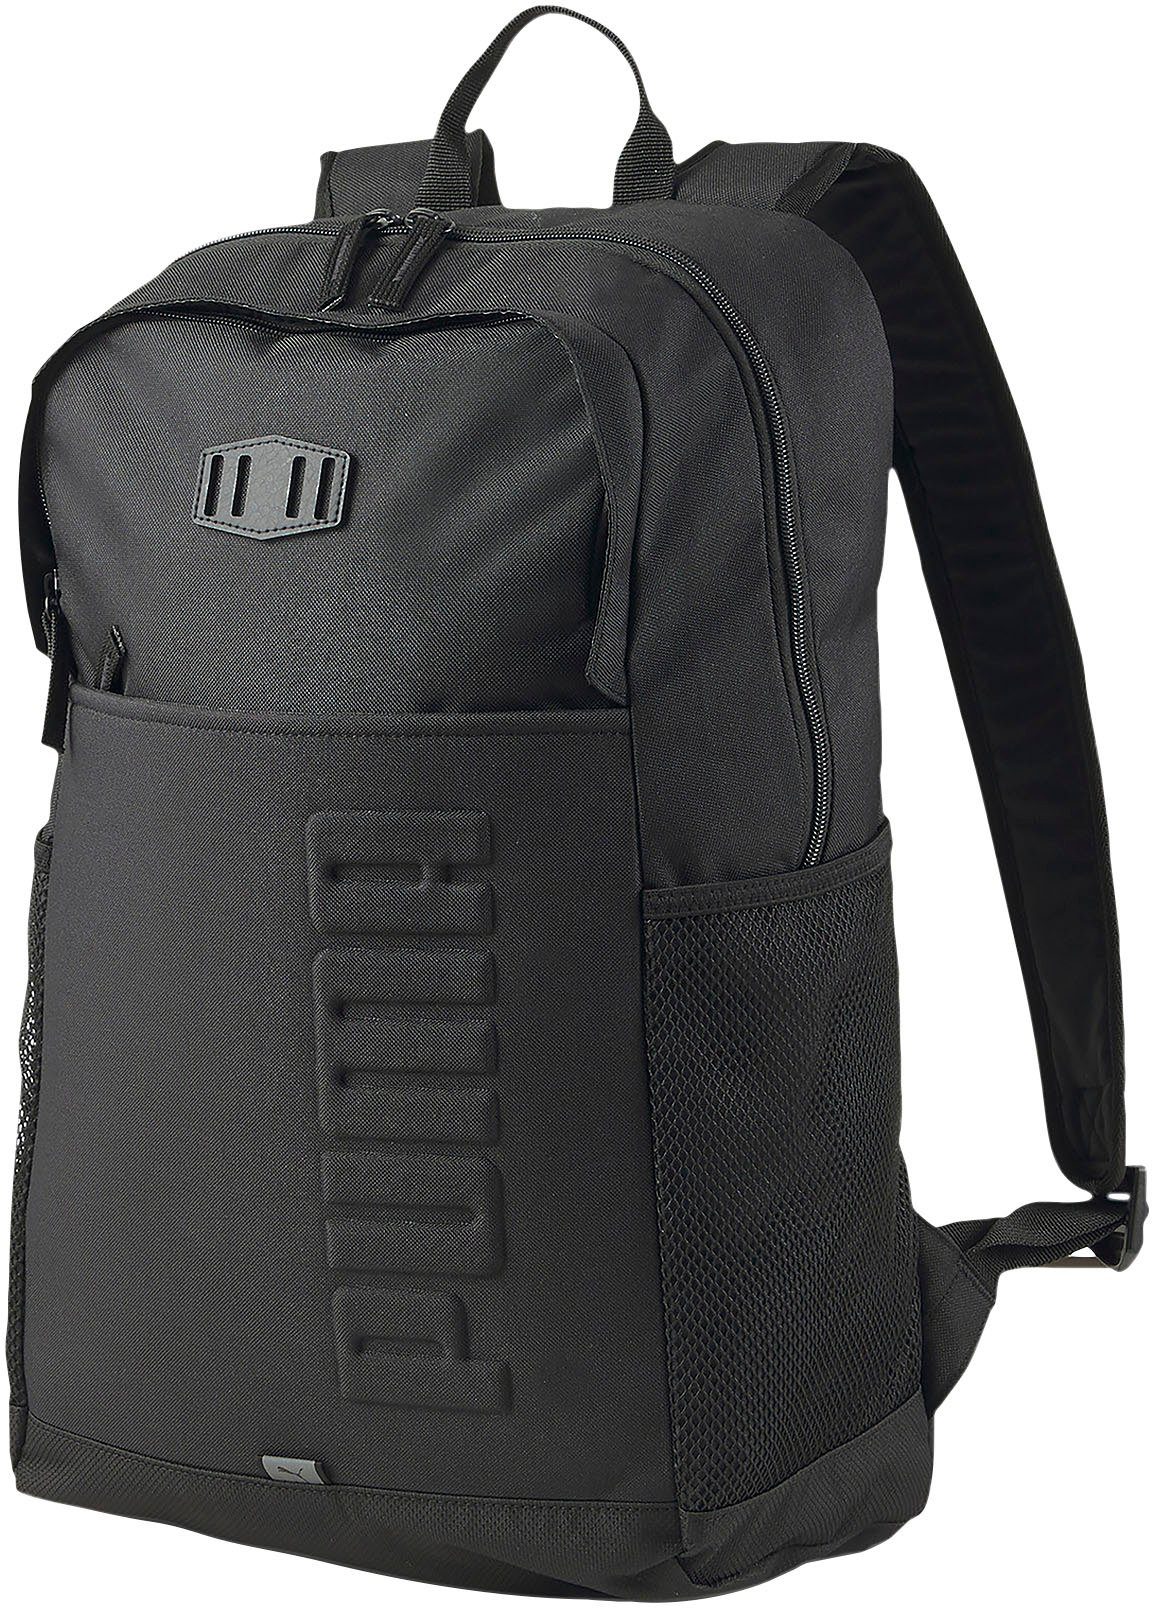 PUMA Sportrucksack »PUMA S Backpack« online kaufen | OTTO